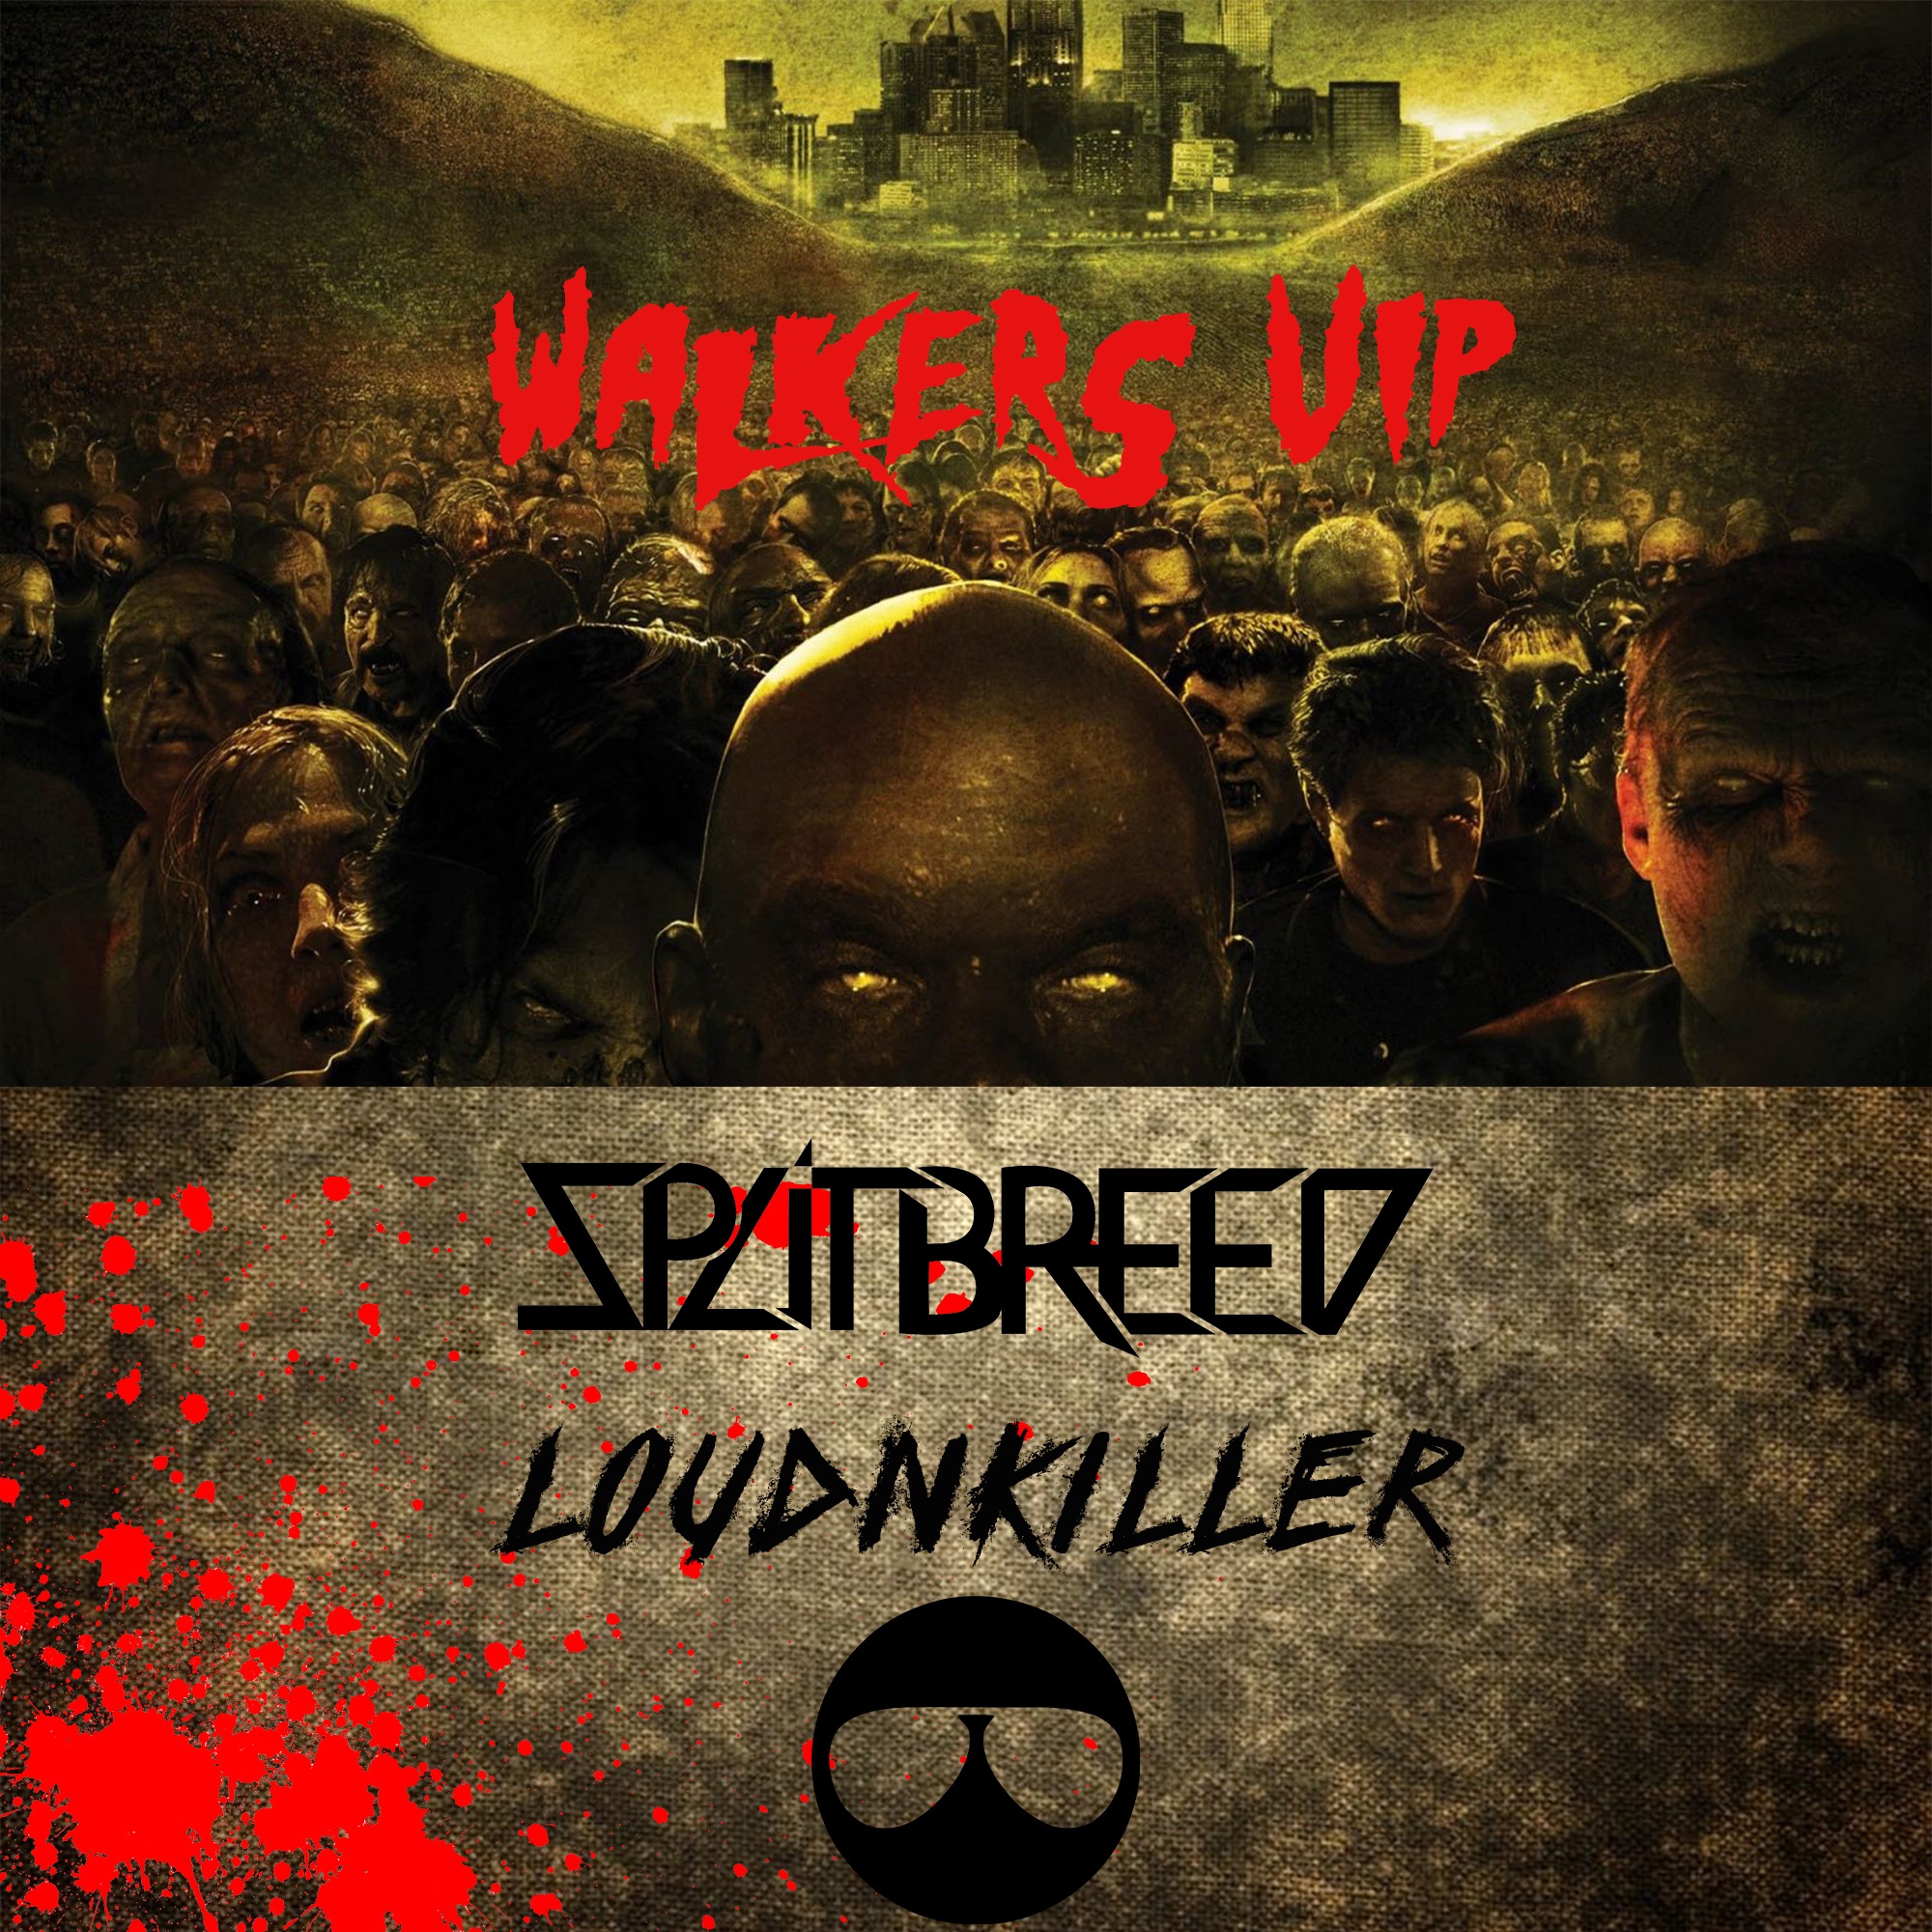 ഡൗൺലോഡ് SPLITBREED & LOUD N' KILLER - WALKERS (VIP)